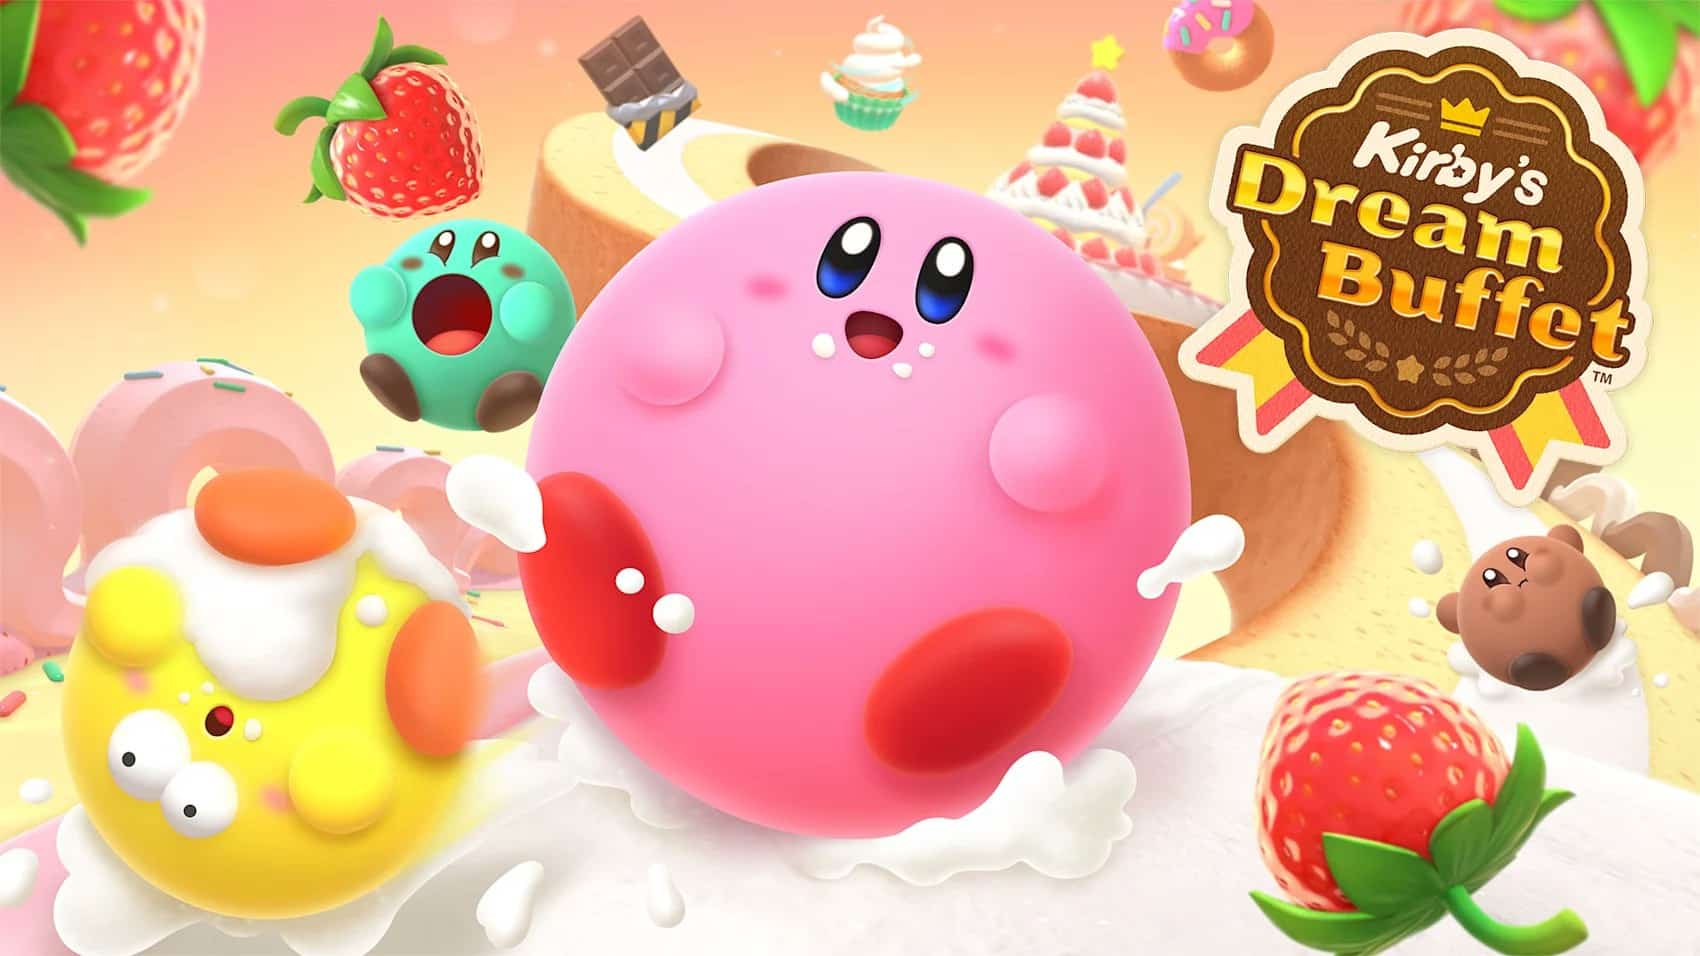 Kirby's Dream Buffet annunciato ufficialmente da Nintendo 2